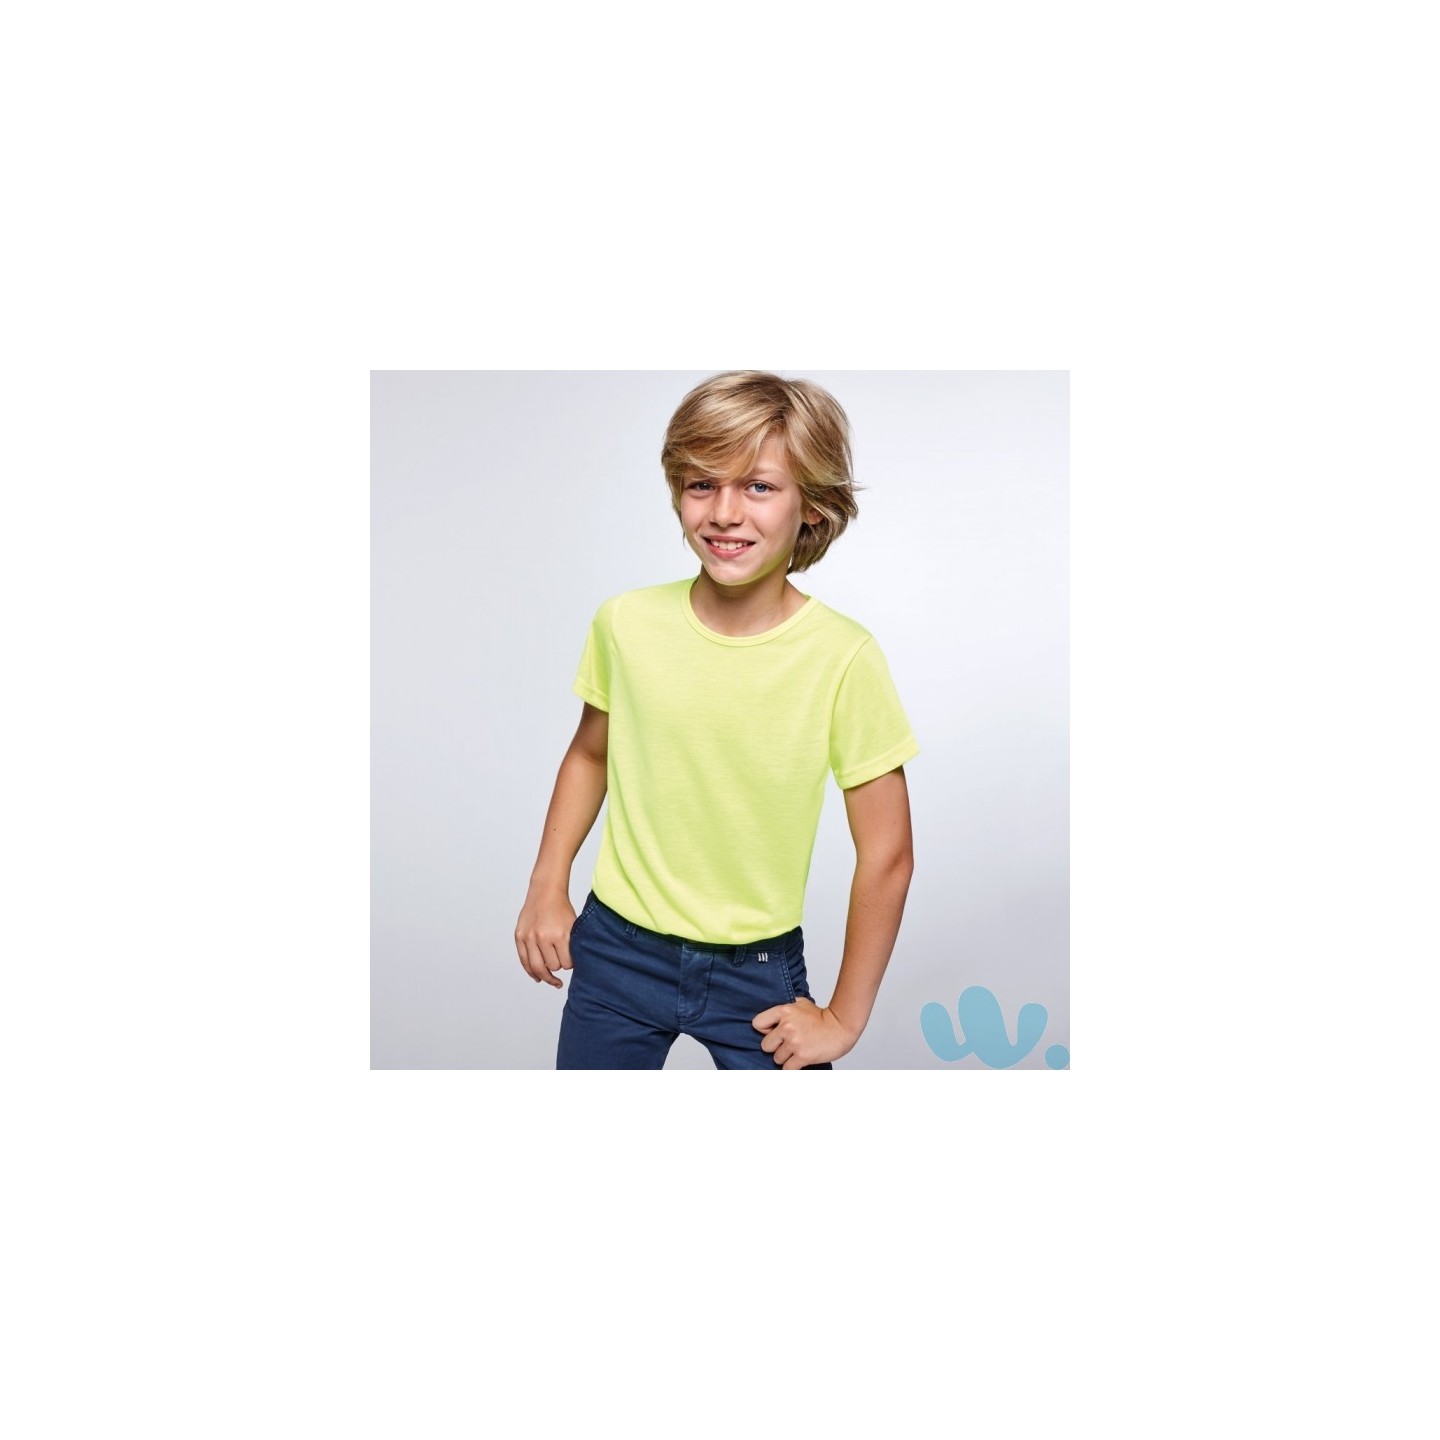 Razernij nogmaals Respect Fluo T-shirt kind neon geel | Jokershop.be - Fluo kleding